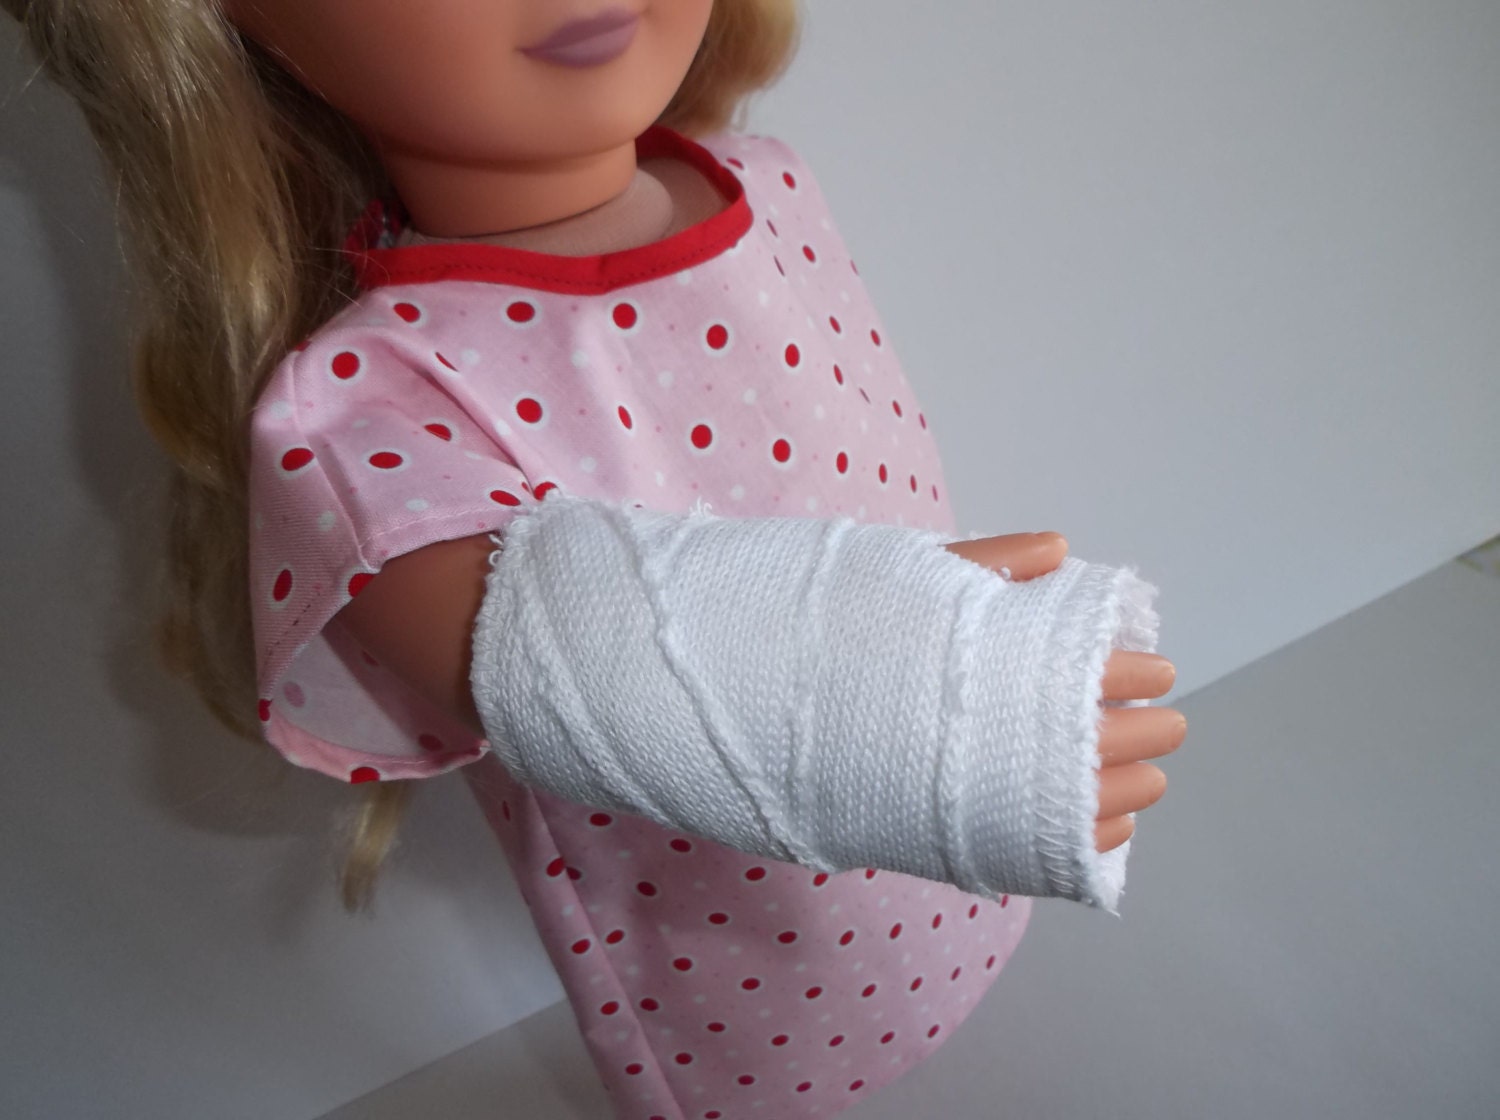 journey girl doll arm broken